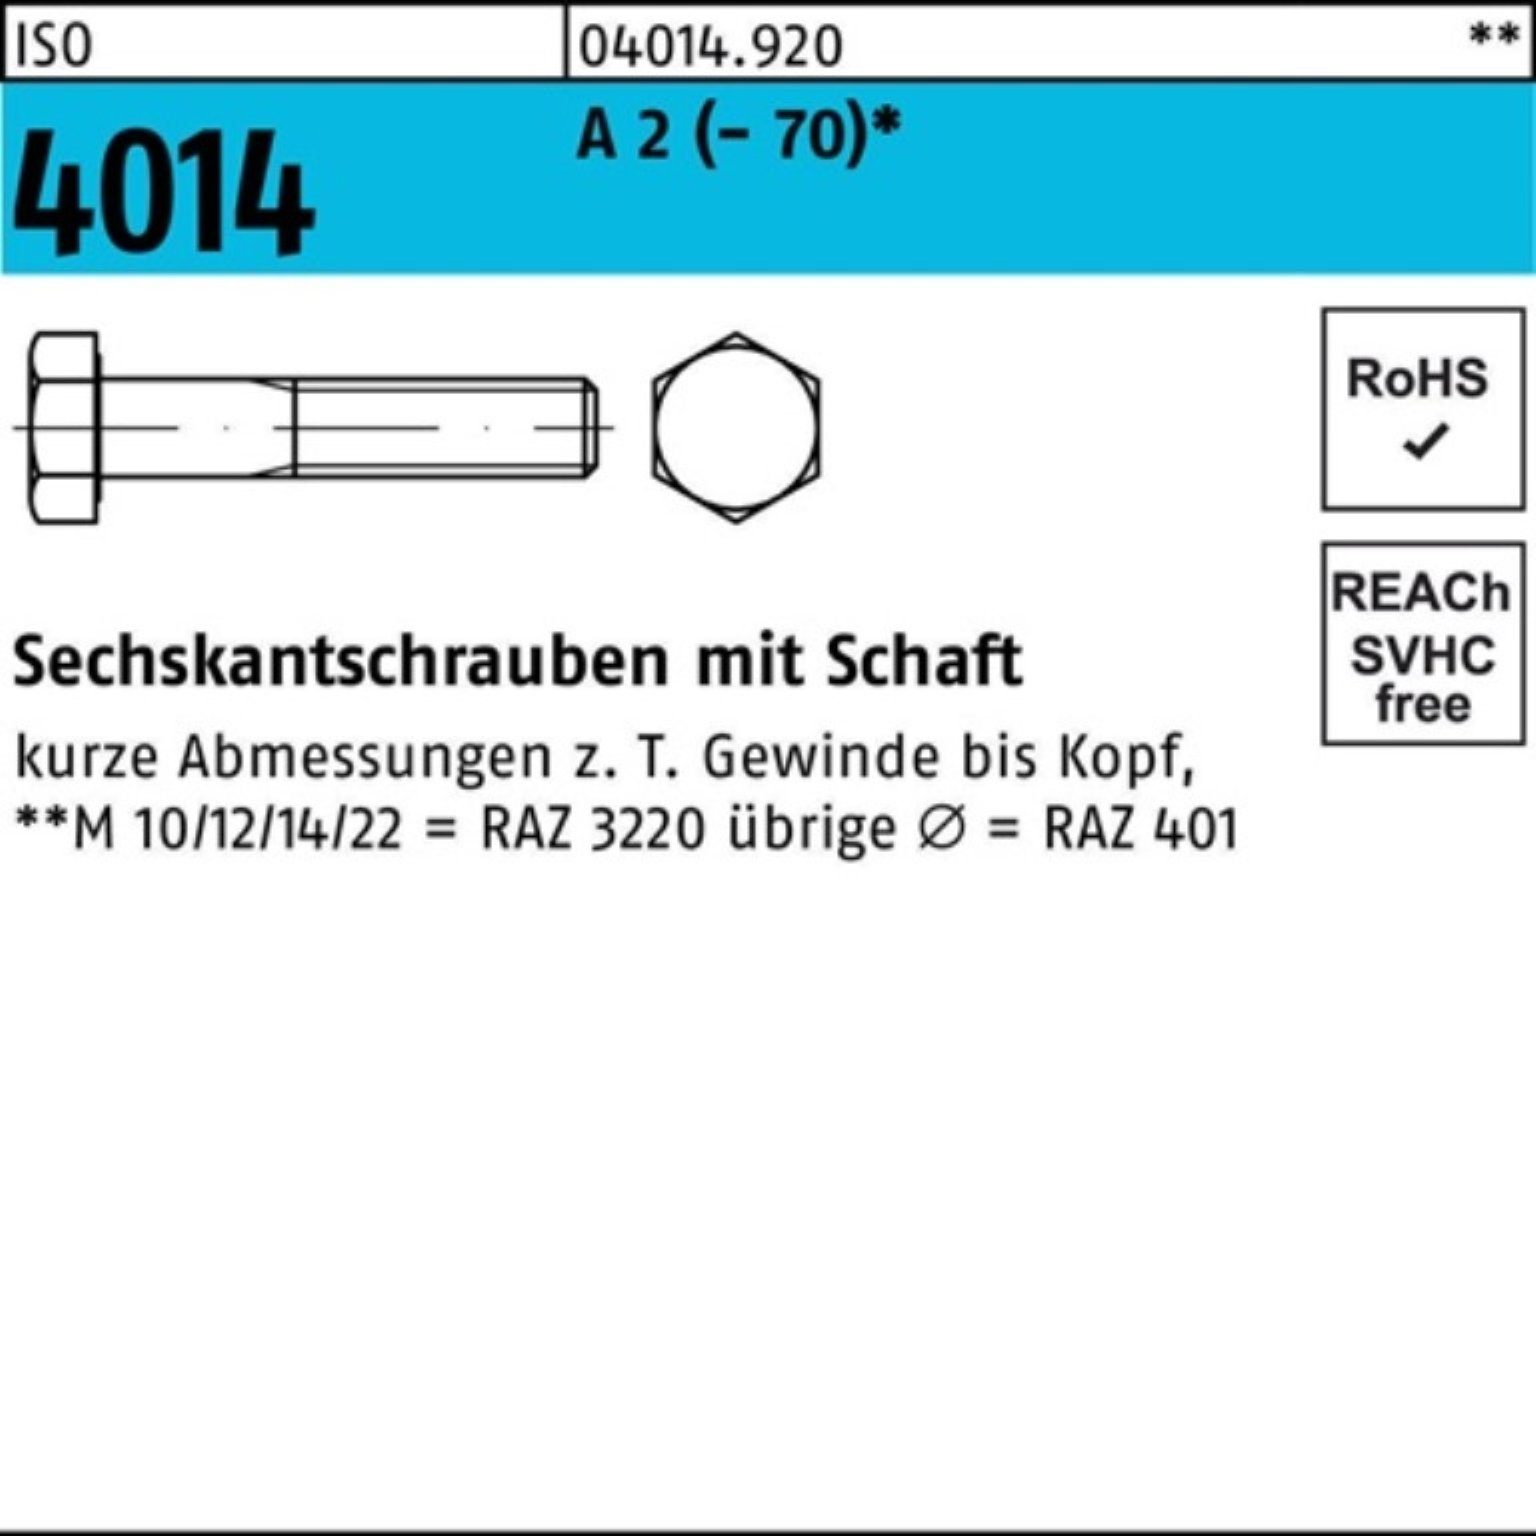 Bufab Sechskantschraube 100er Pack Sechskantschraube ISO 4014 Schaft M16x 120 A 2 (70) 25 St